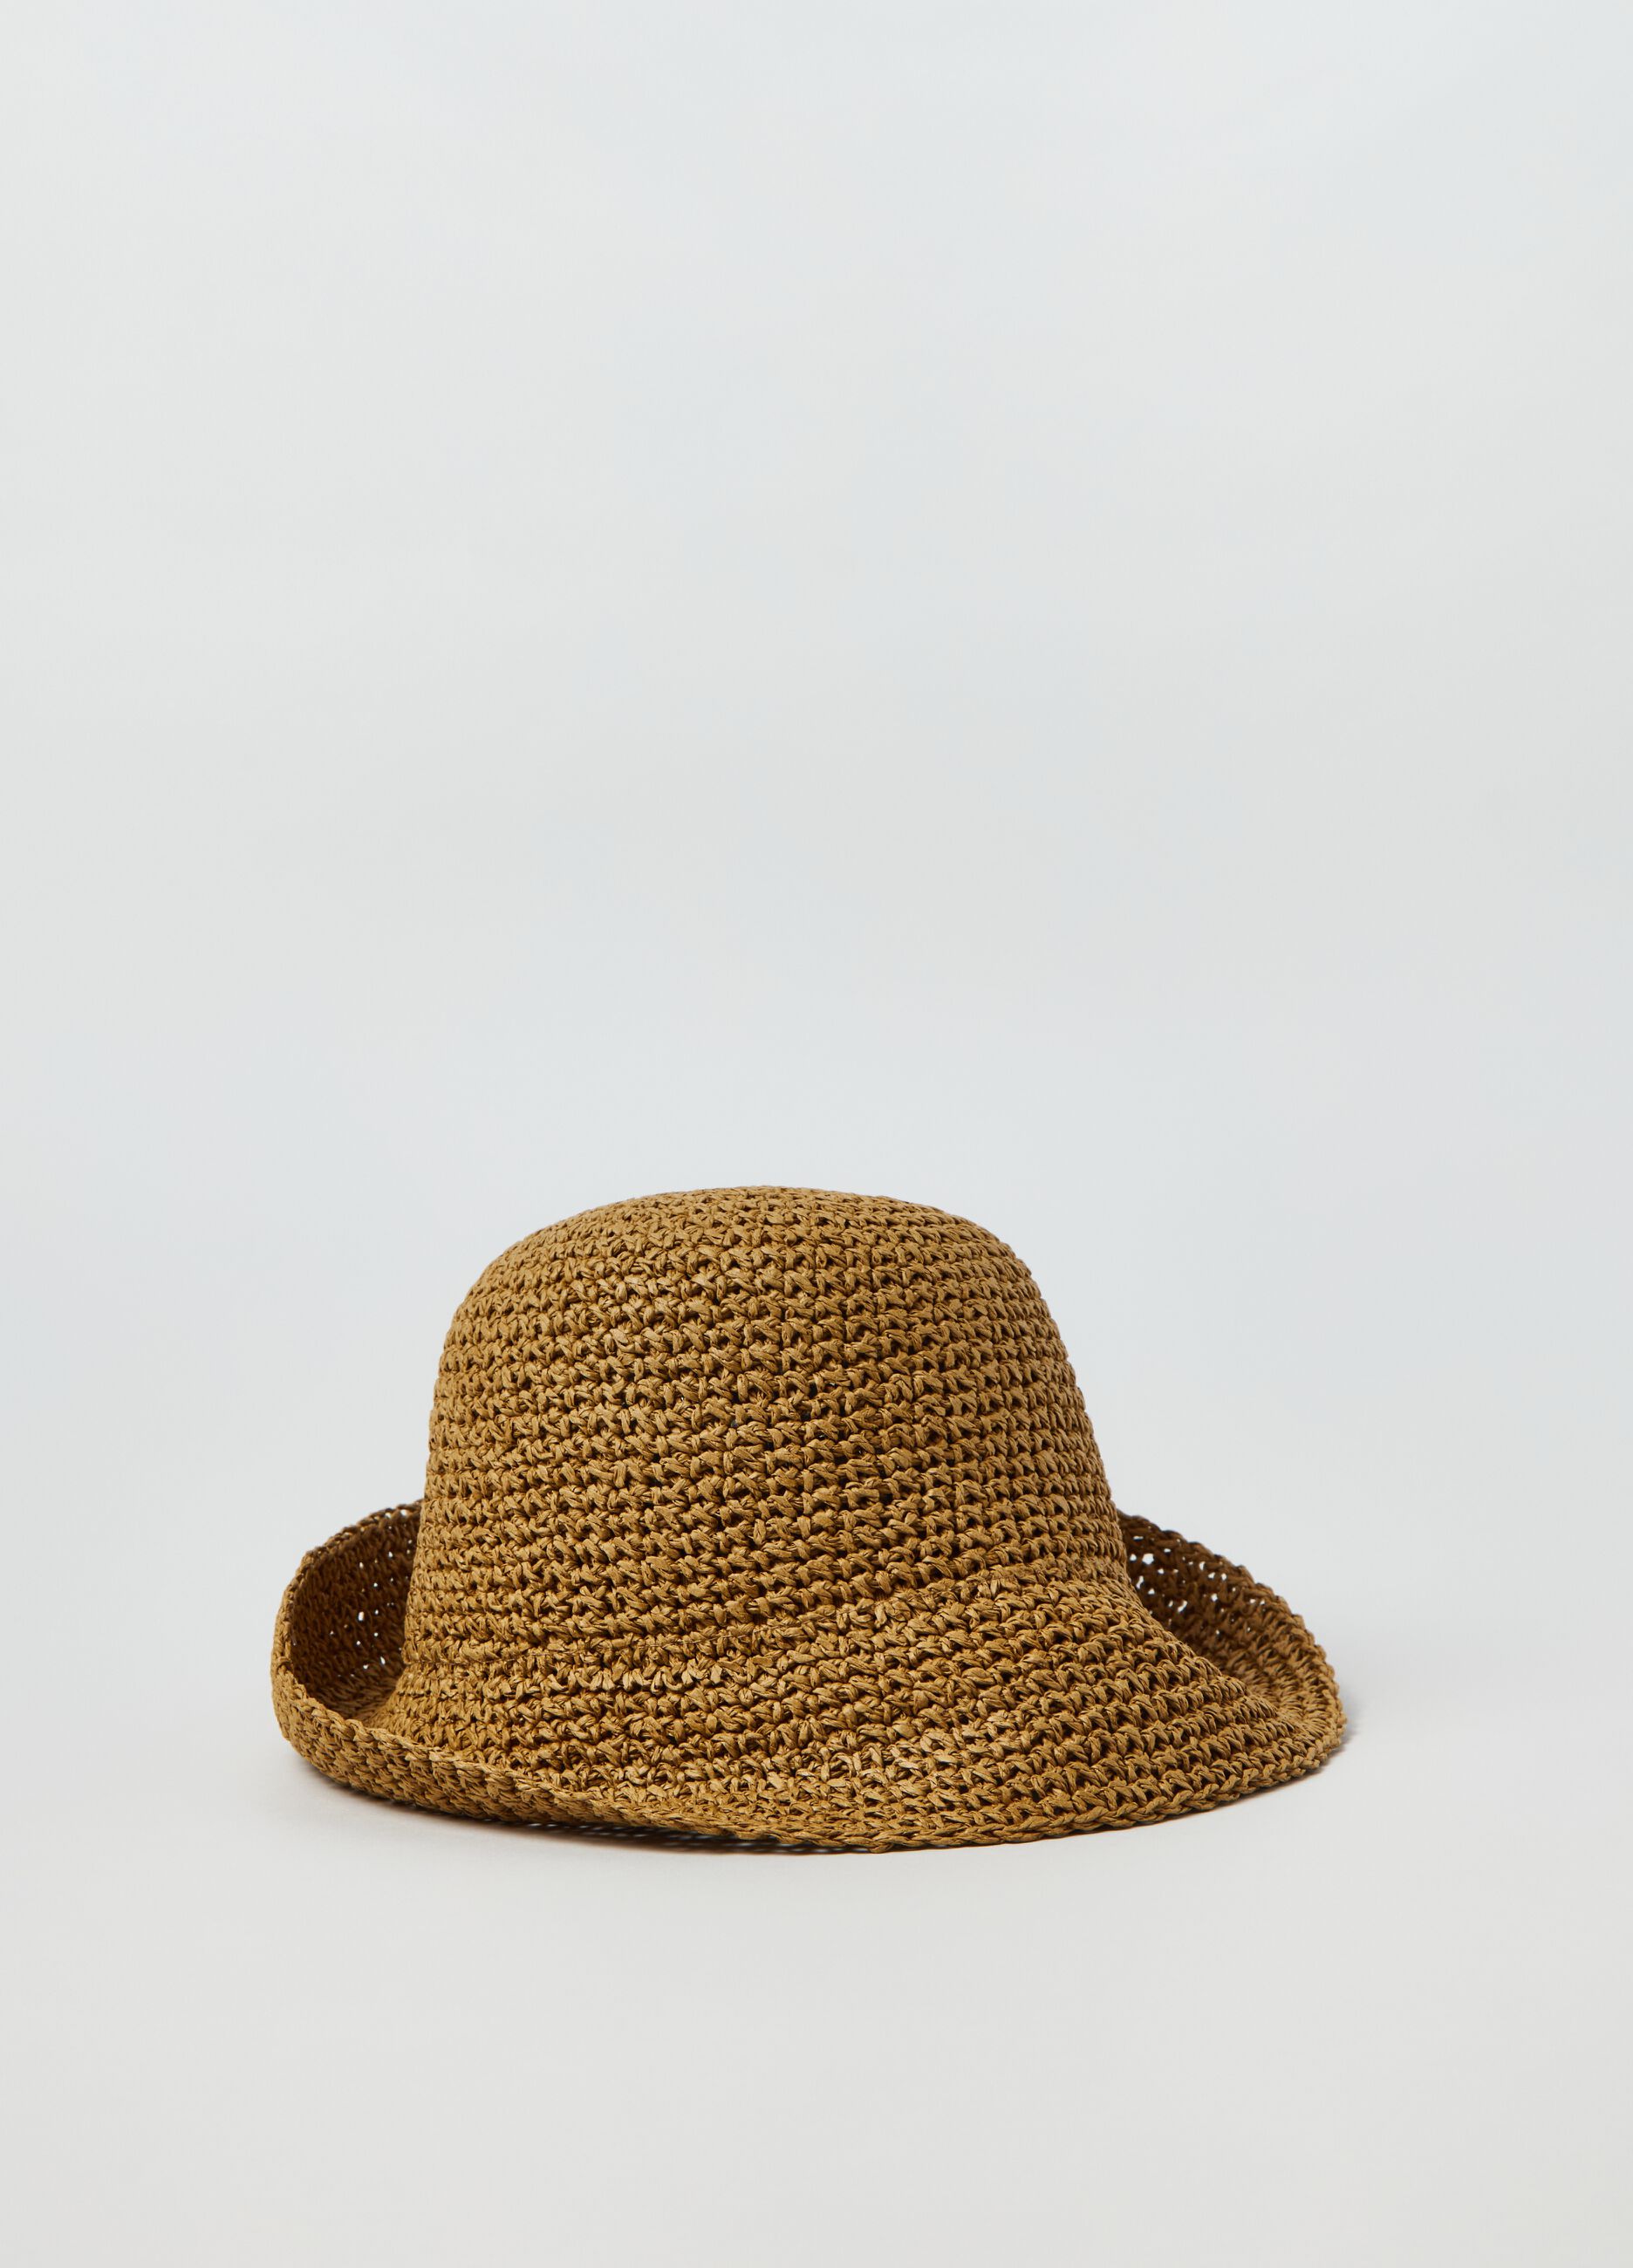 Straw bucket hat